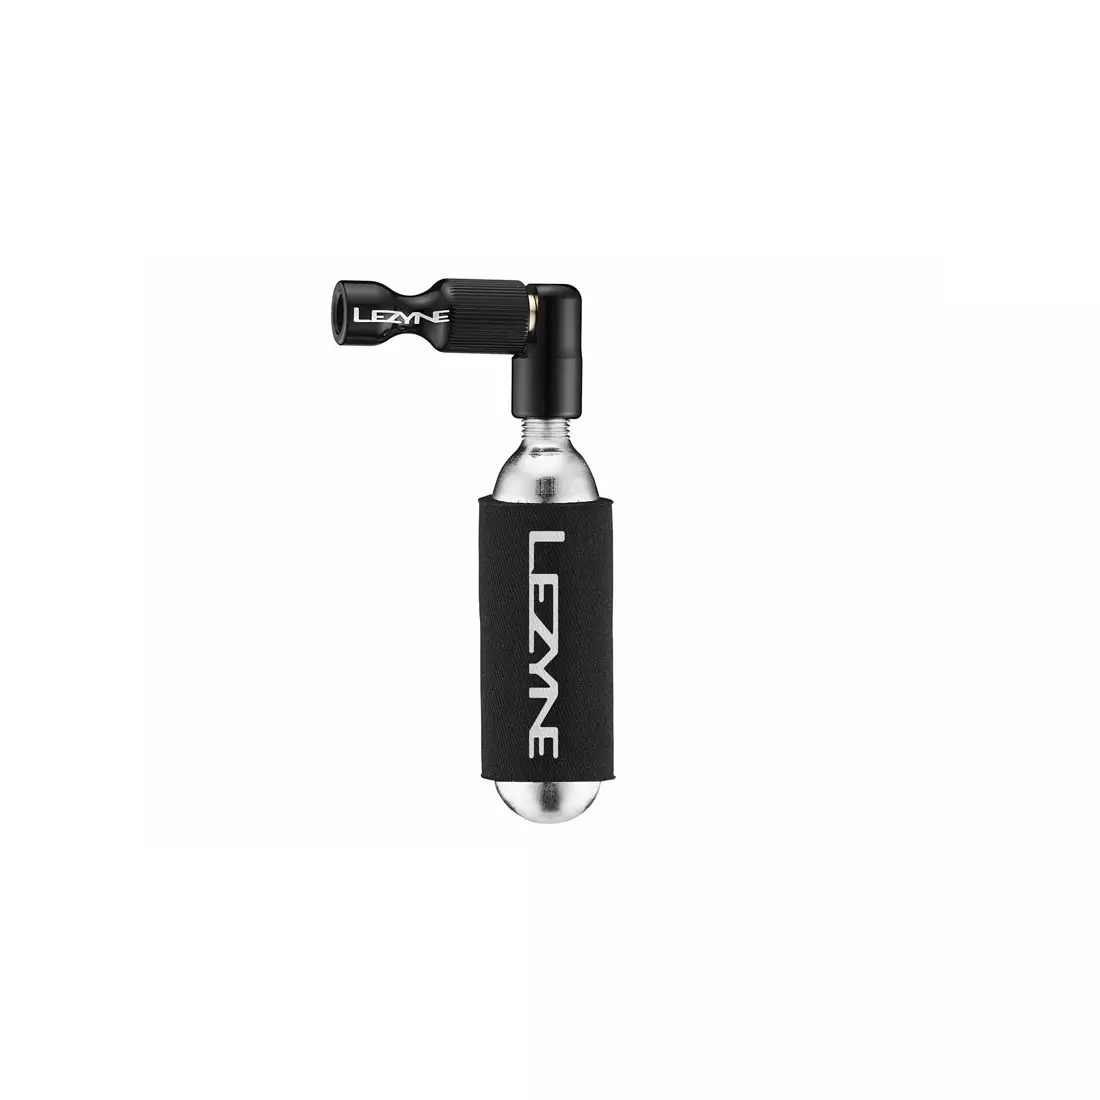 LEZYNE pompka rowerowa ręczna trigger drive co2 + nabój gazowy 16g czarny LZN-1-C2-TRDR-V104